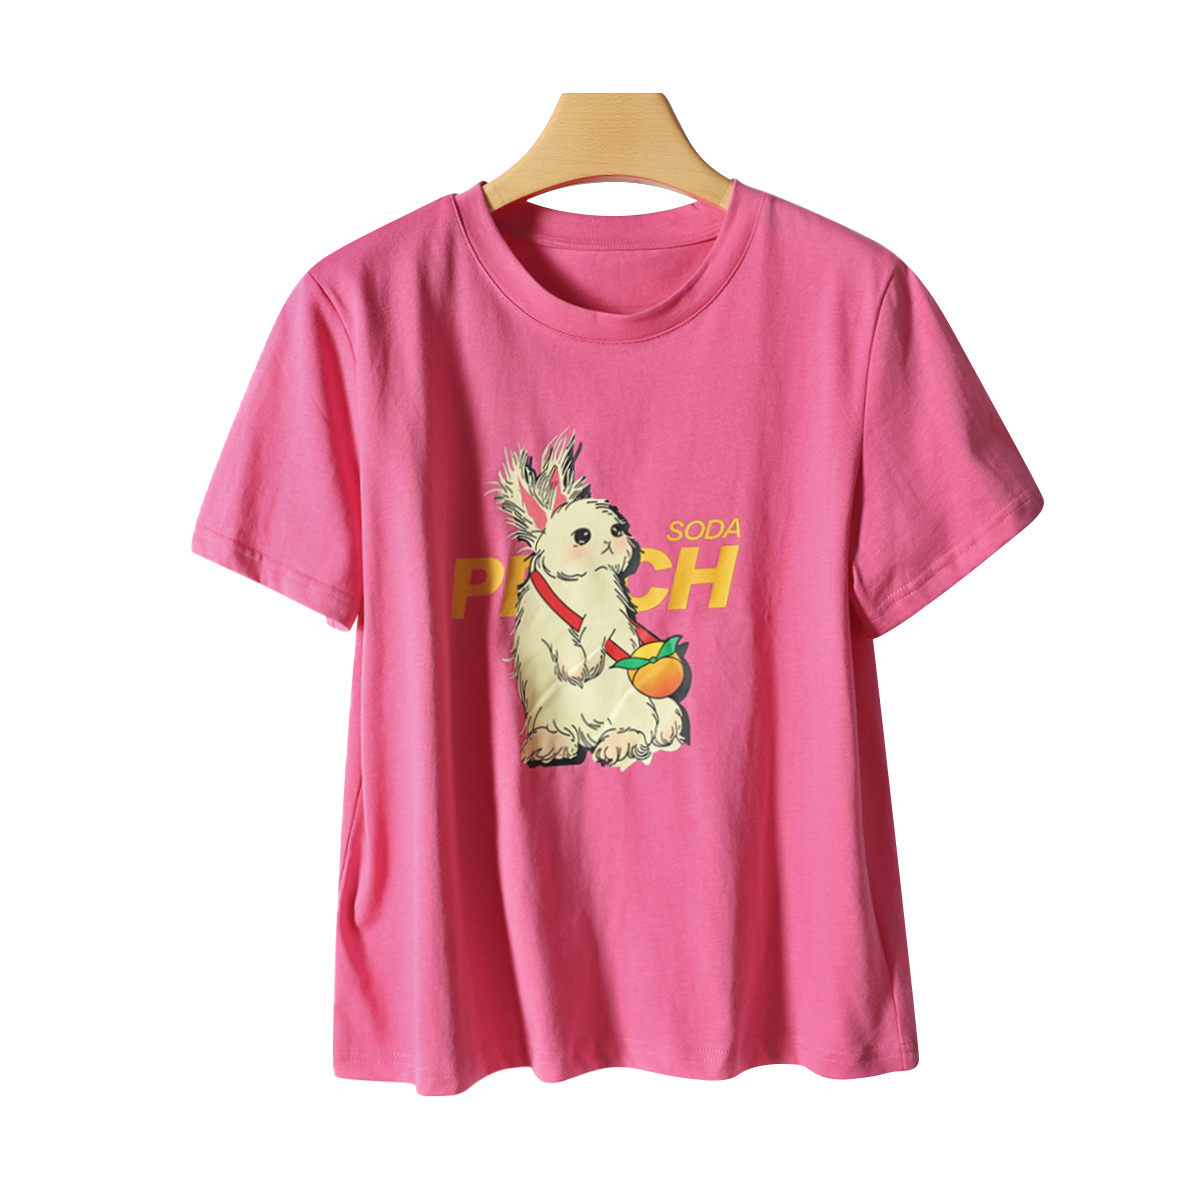 【亮】24春品牌折扣甜美可爱卡通图案兔子显瘦直筒T恤上衣女士284